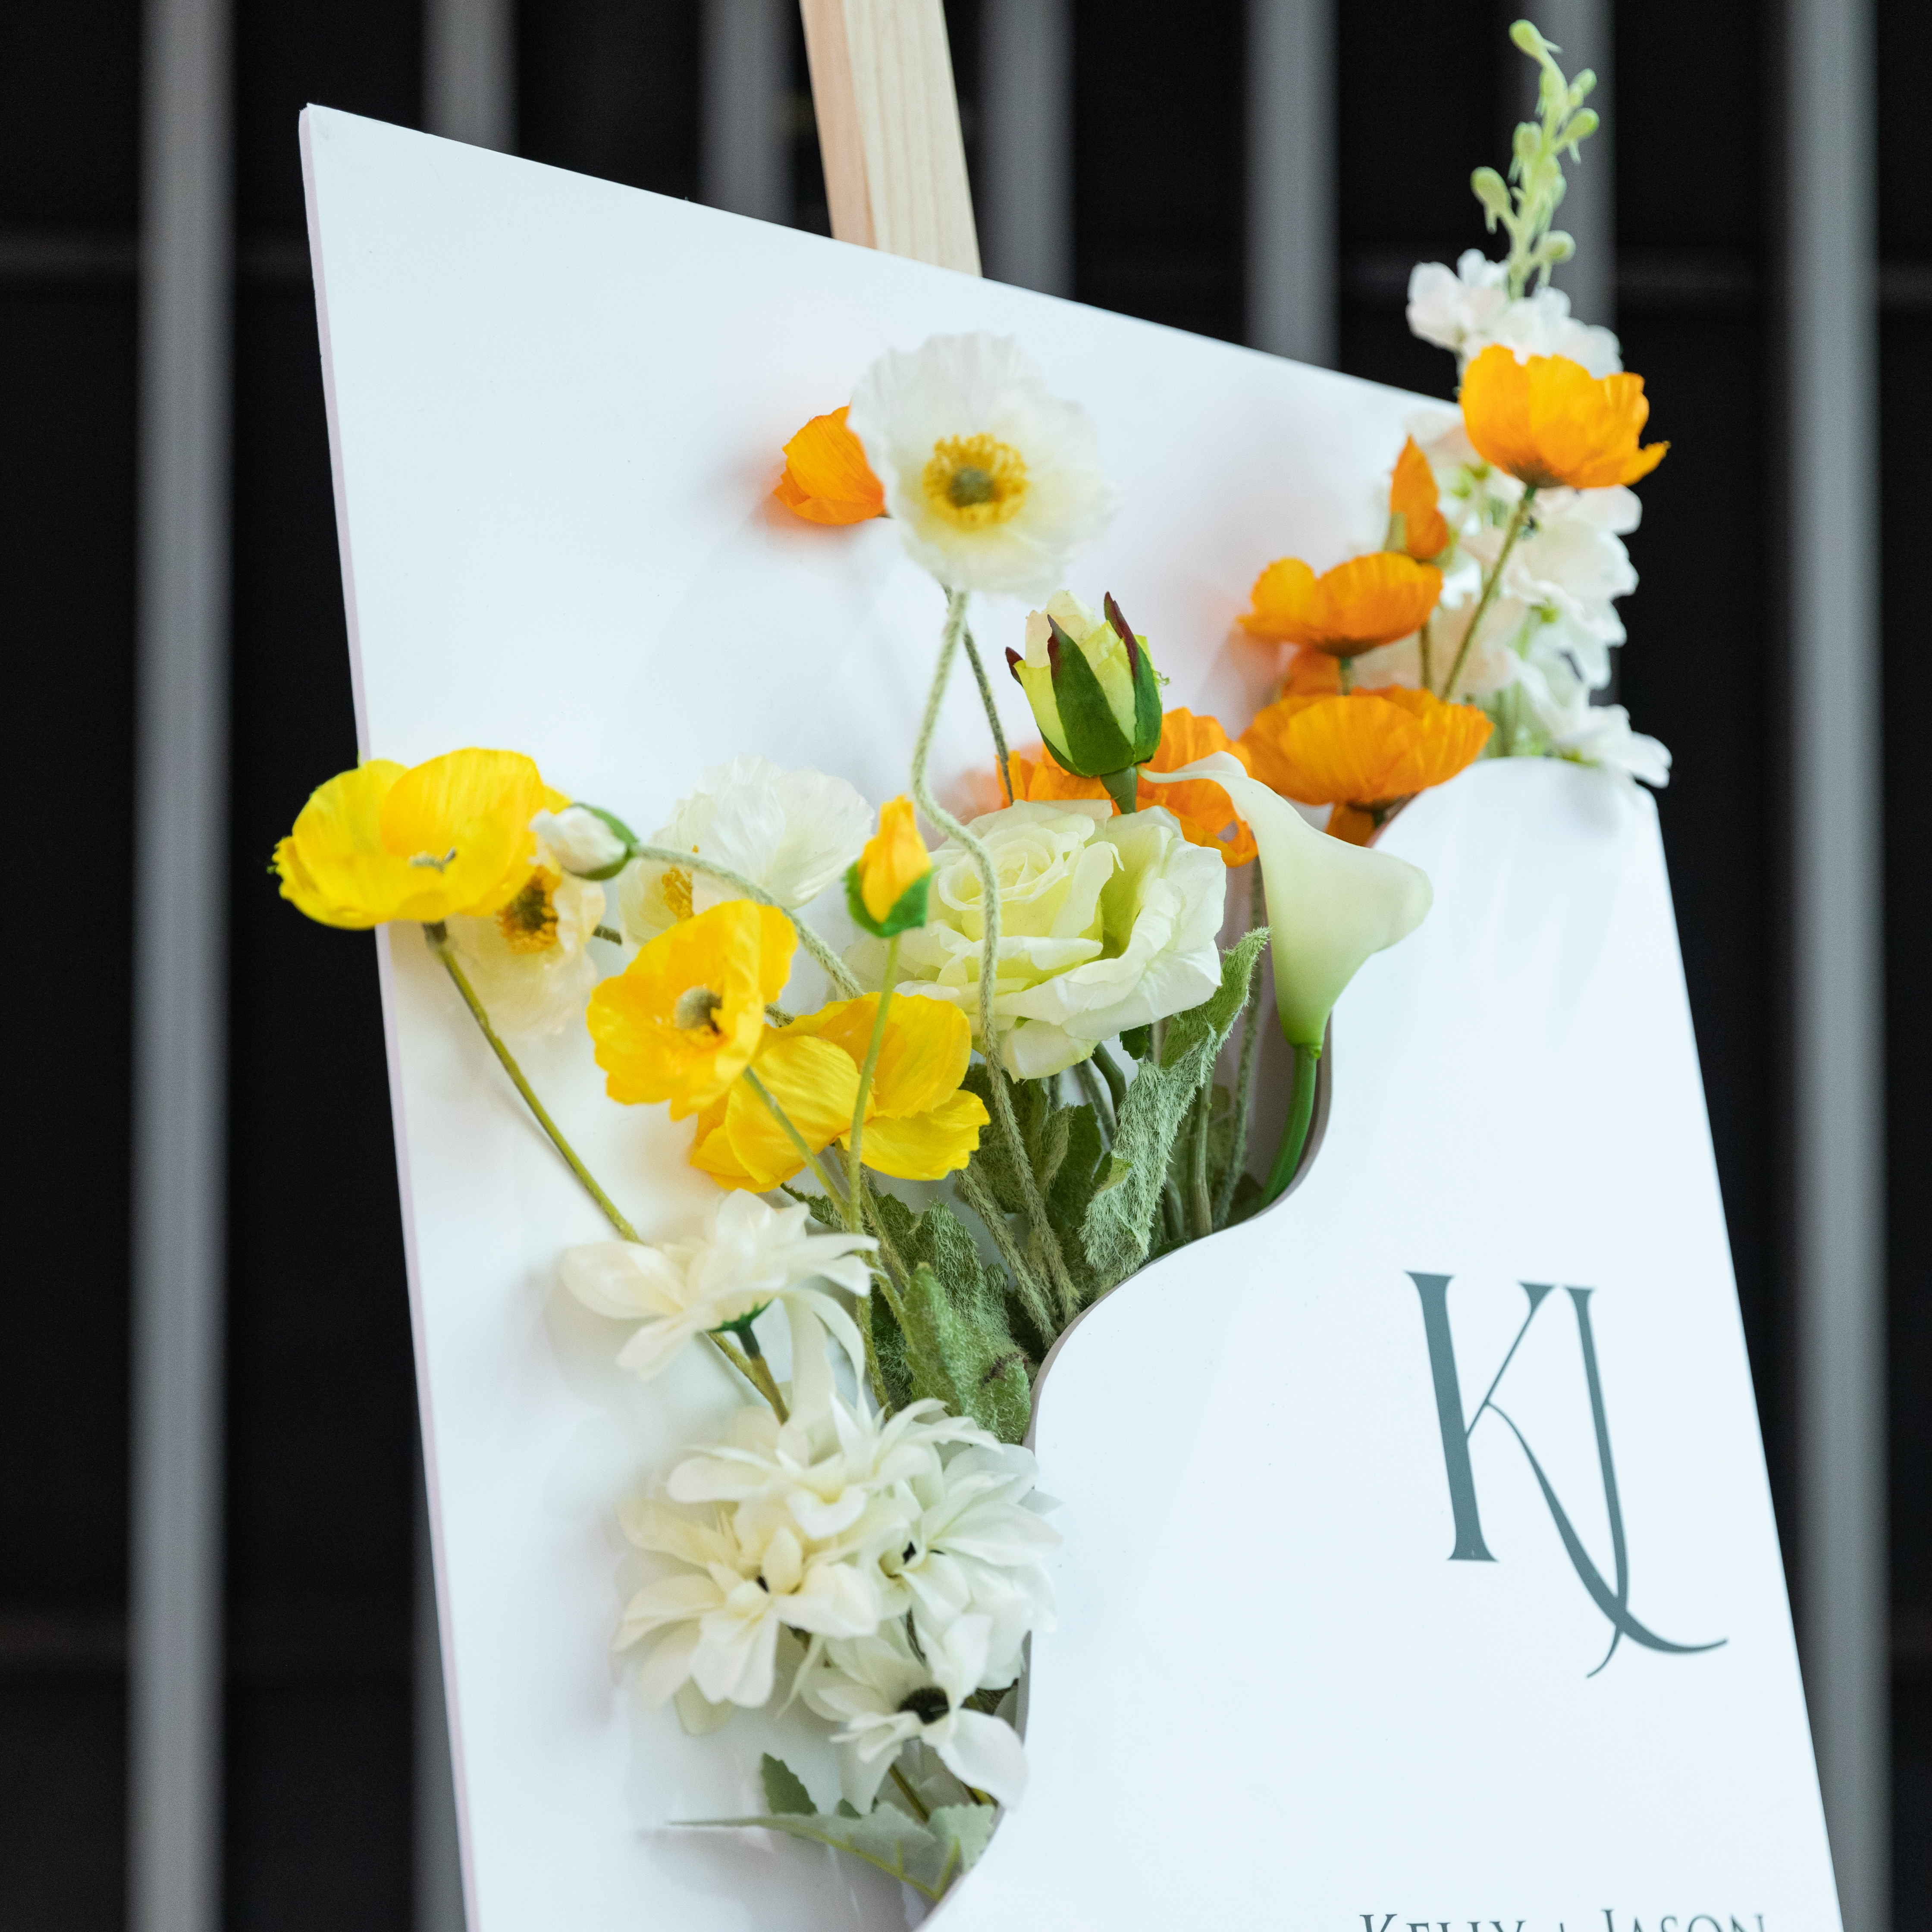 3mm Cartelli Plexiglass tableau di mariage con fiori YK070 - Clicca l'immagine per chiudere